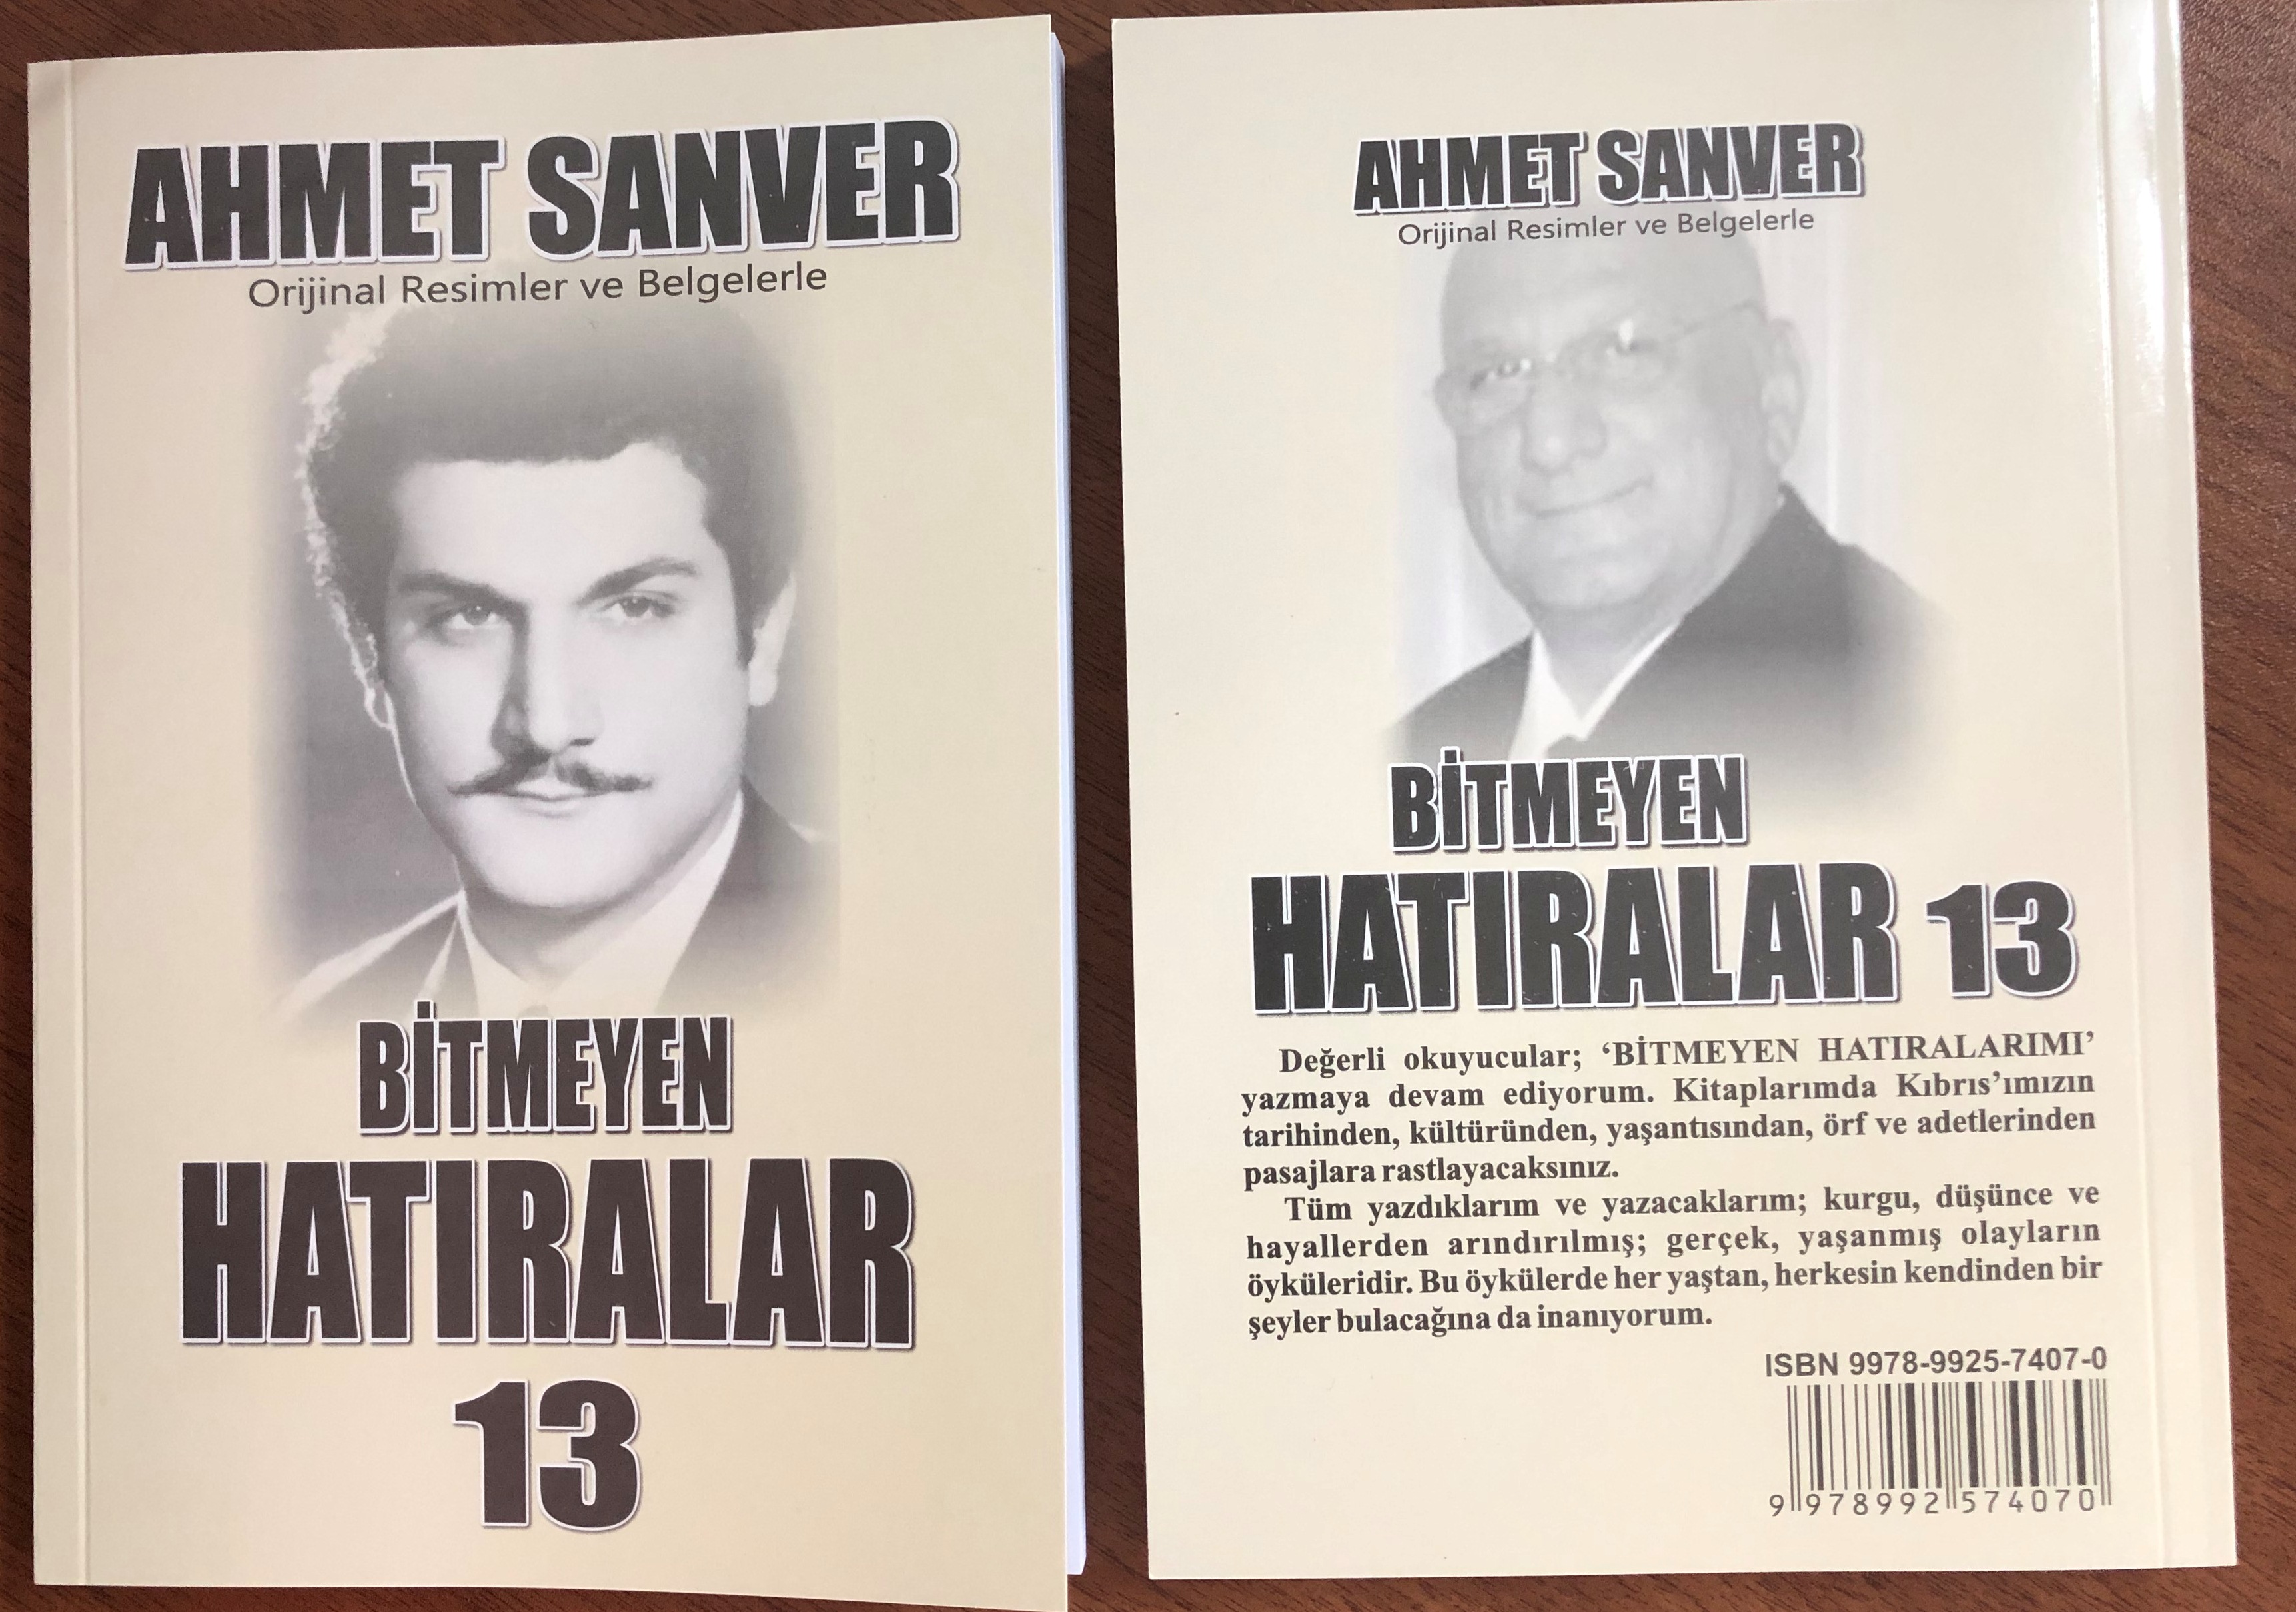  Ahmet Sanver’in 13’üncü kitabı “Bitmeyen Hatıralar” çıktı